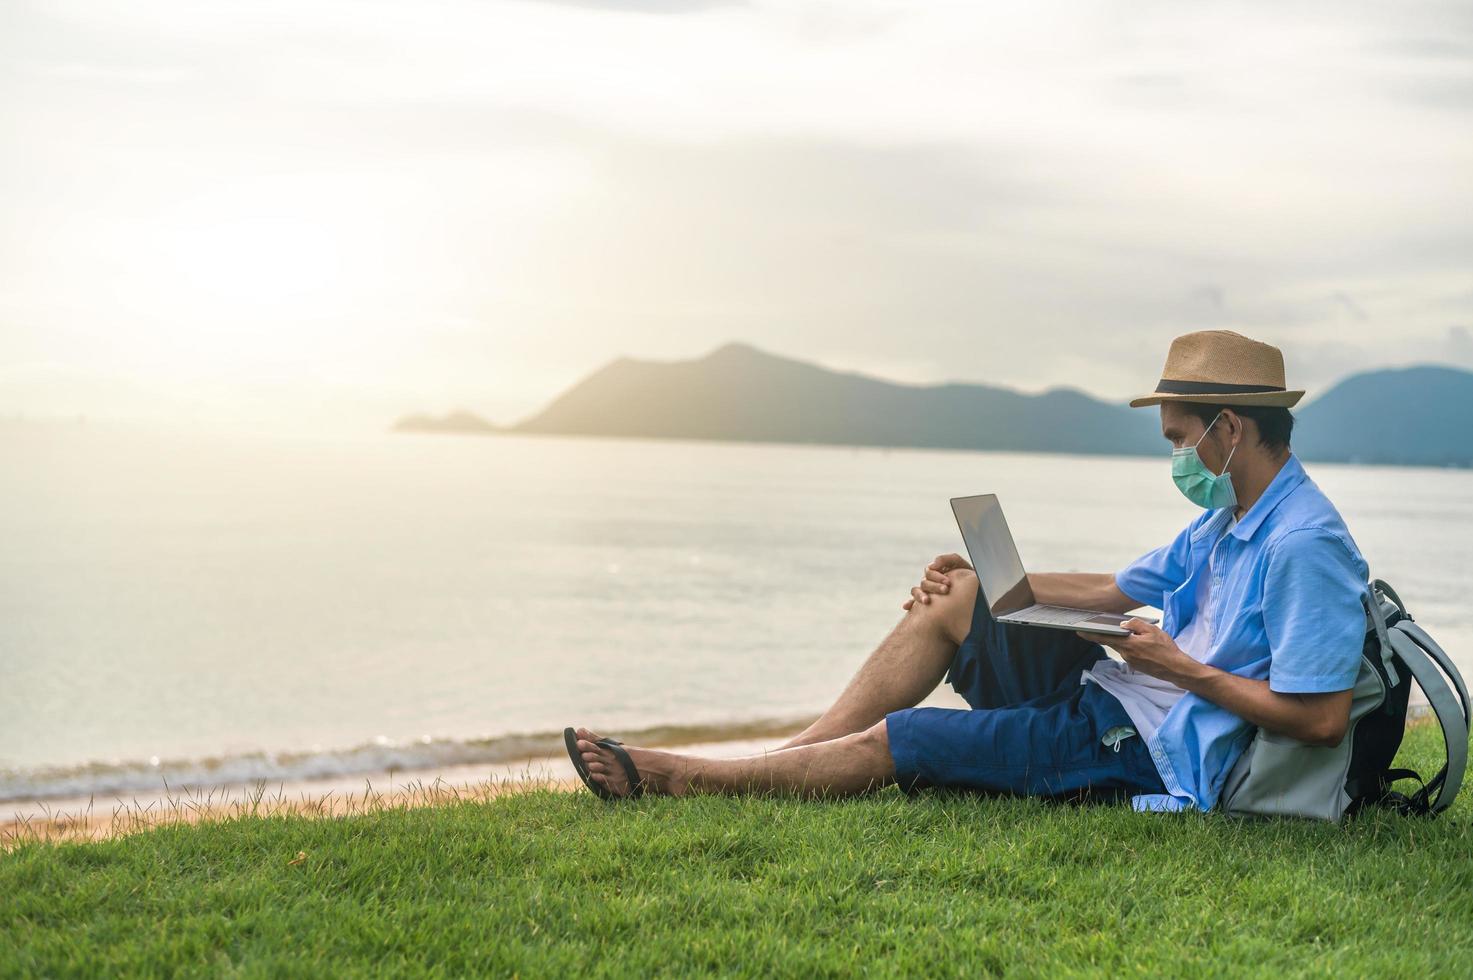 Mann trägt Maske mit Laptop-Computer am Strand Meer und Mann Reisen Urlaub Phuket Sandbox Thailand sind Freiheit Leben Finanzen foto